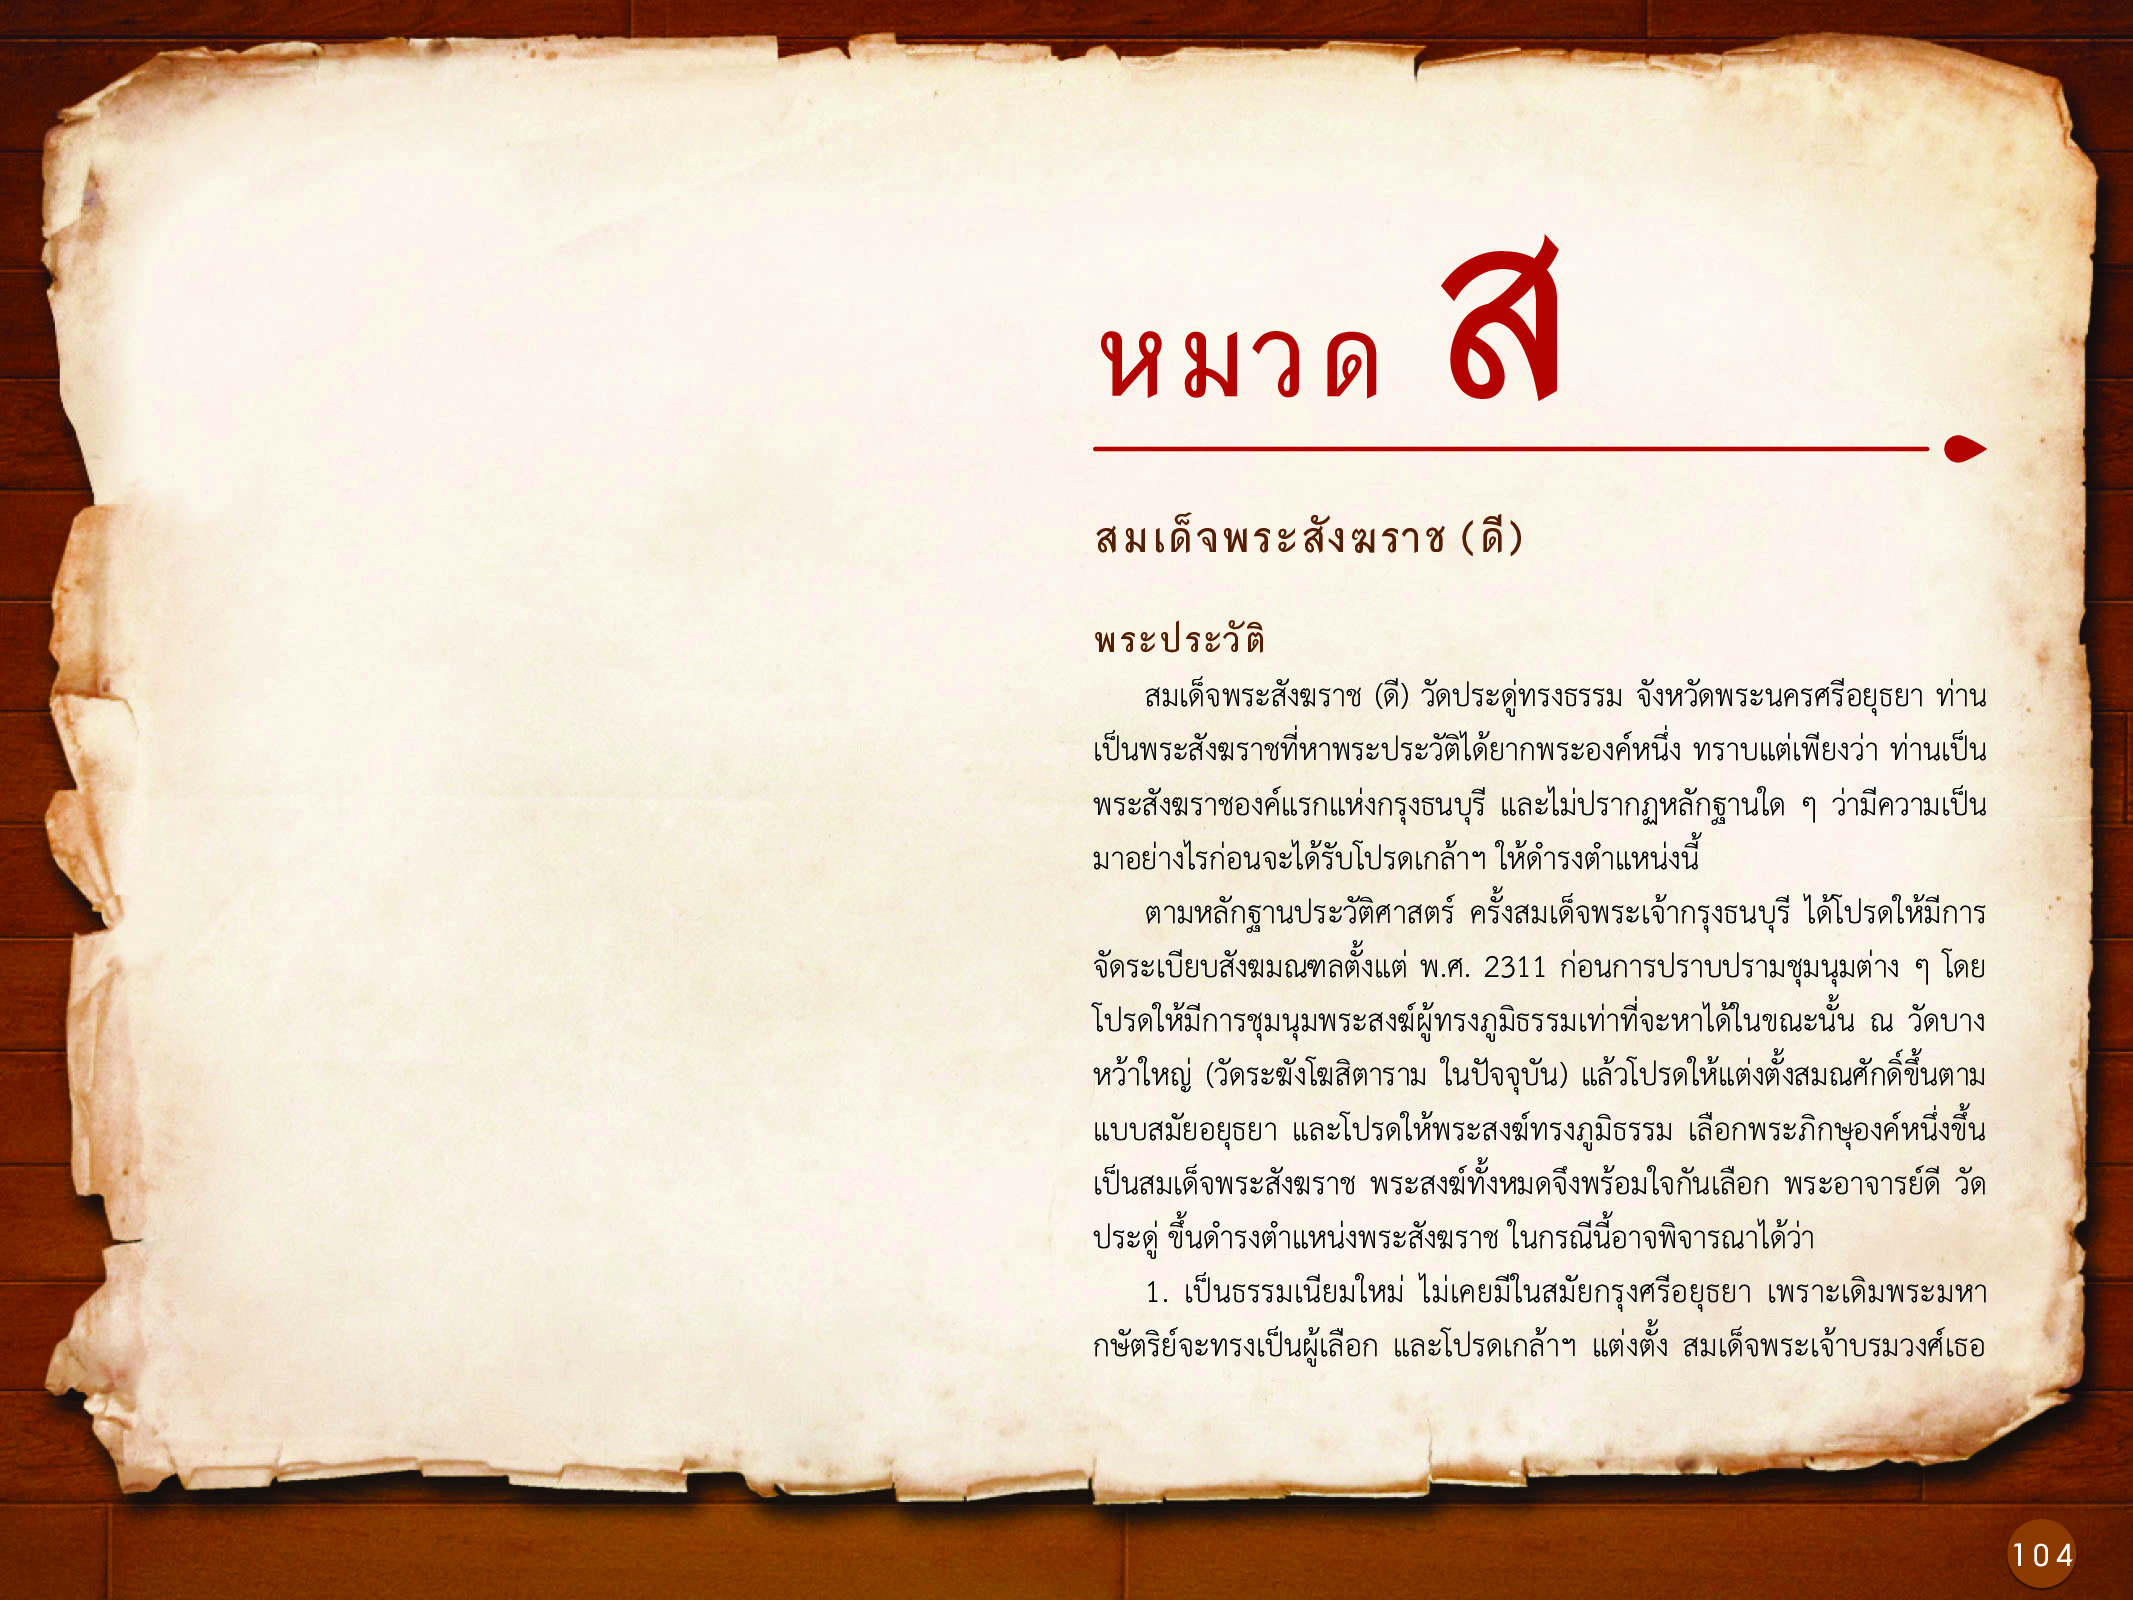 ประวัติศาสตร์กรุงธนบุรี ./images/history_dhonburi/104.jpg